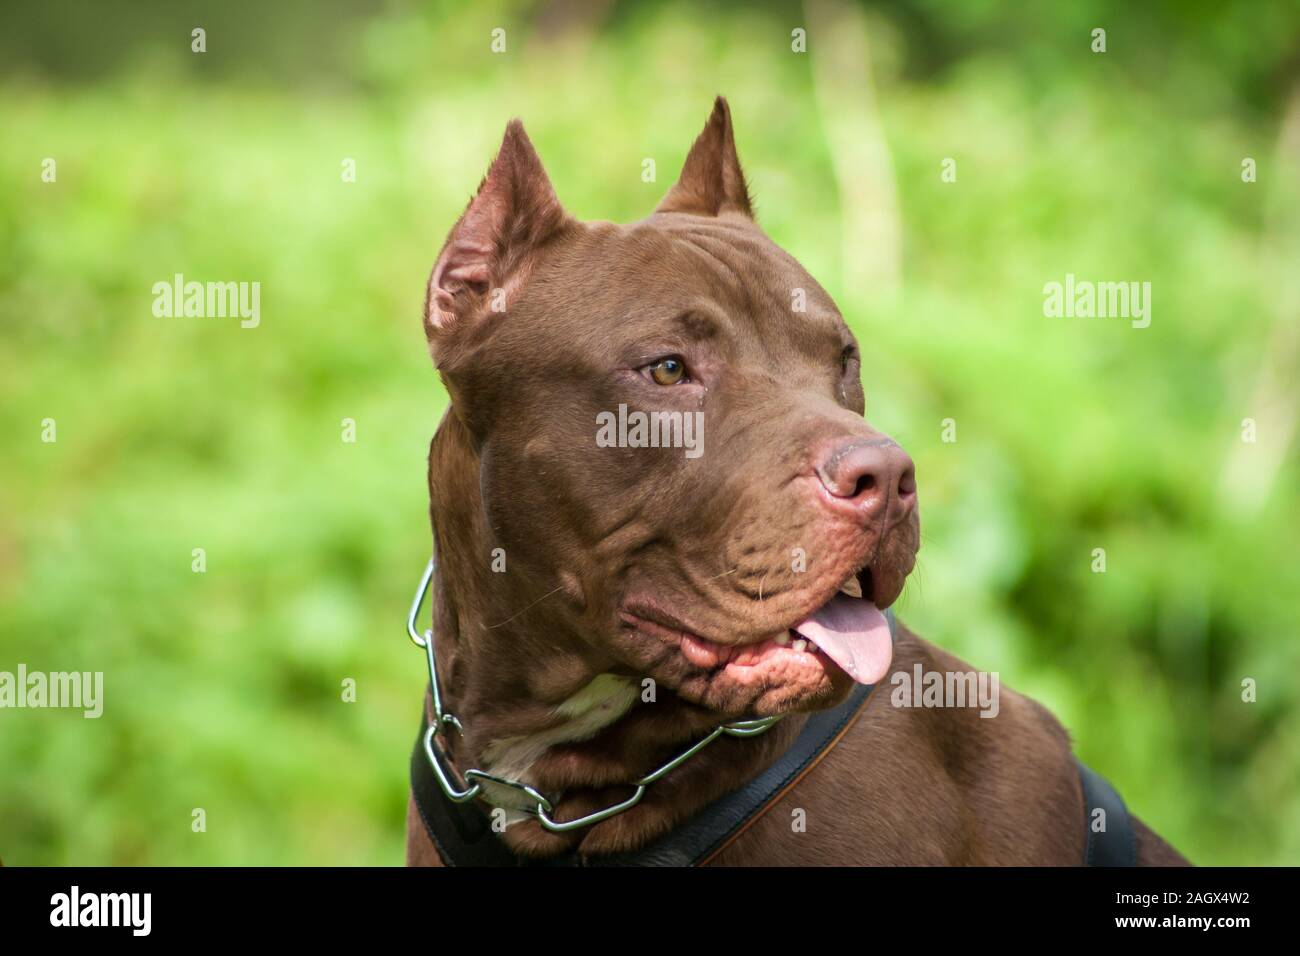 Retrato de una rednose recortado American Bully dog Foto de stock